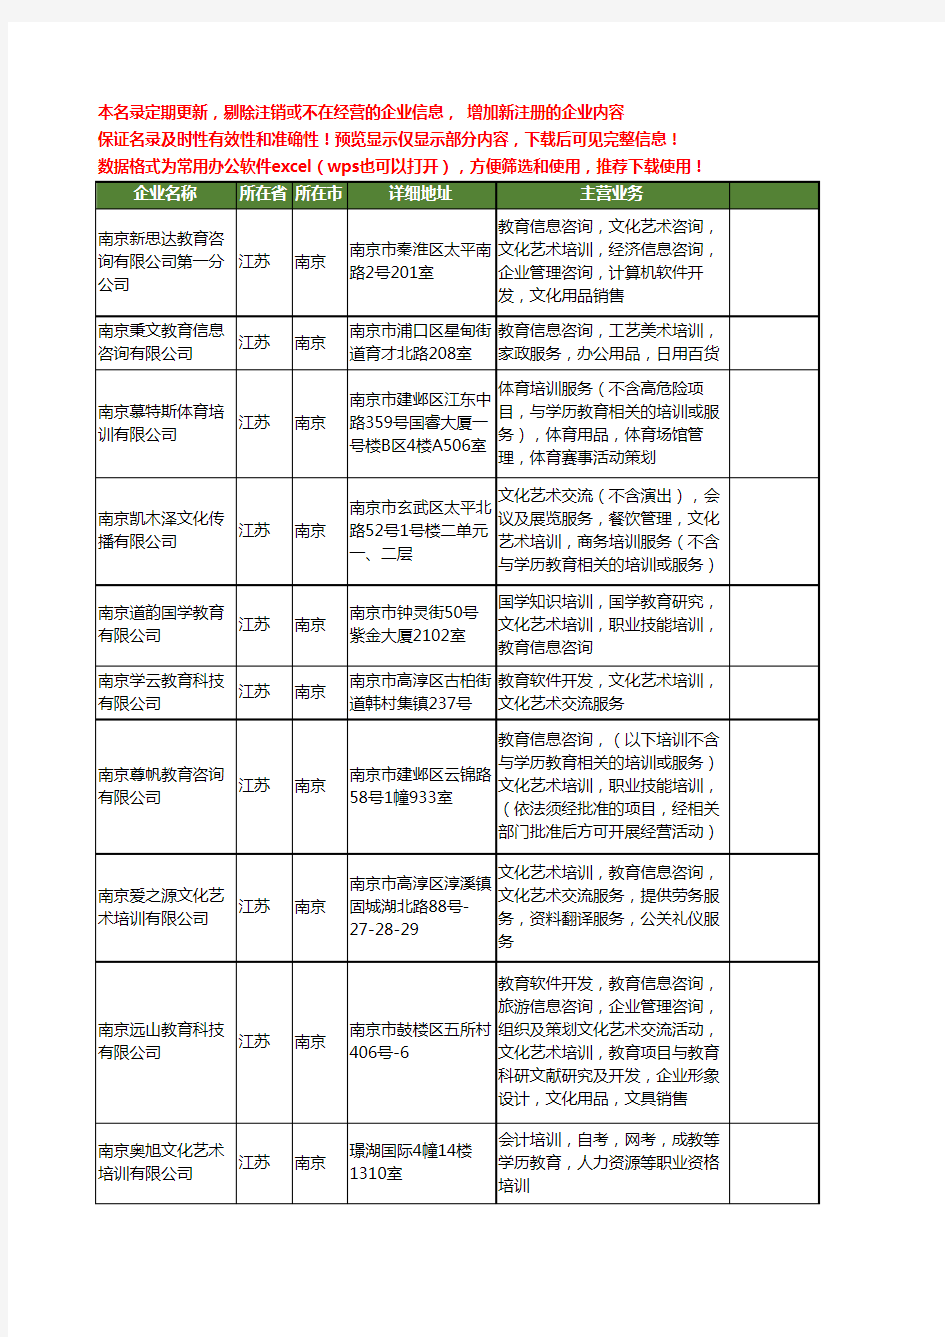 新版江苏省南京艺术培训教育工商企业公司商家名录名单联系方式大全83家